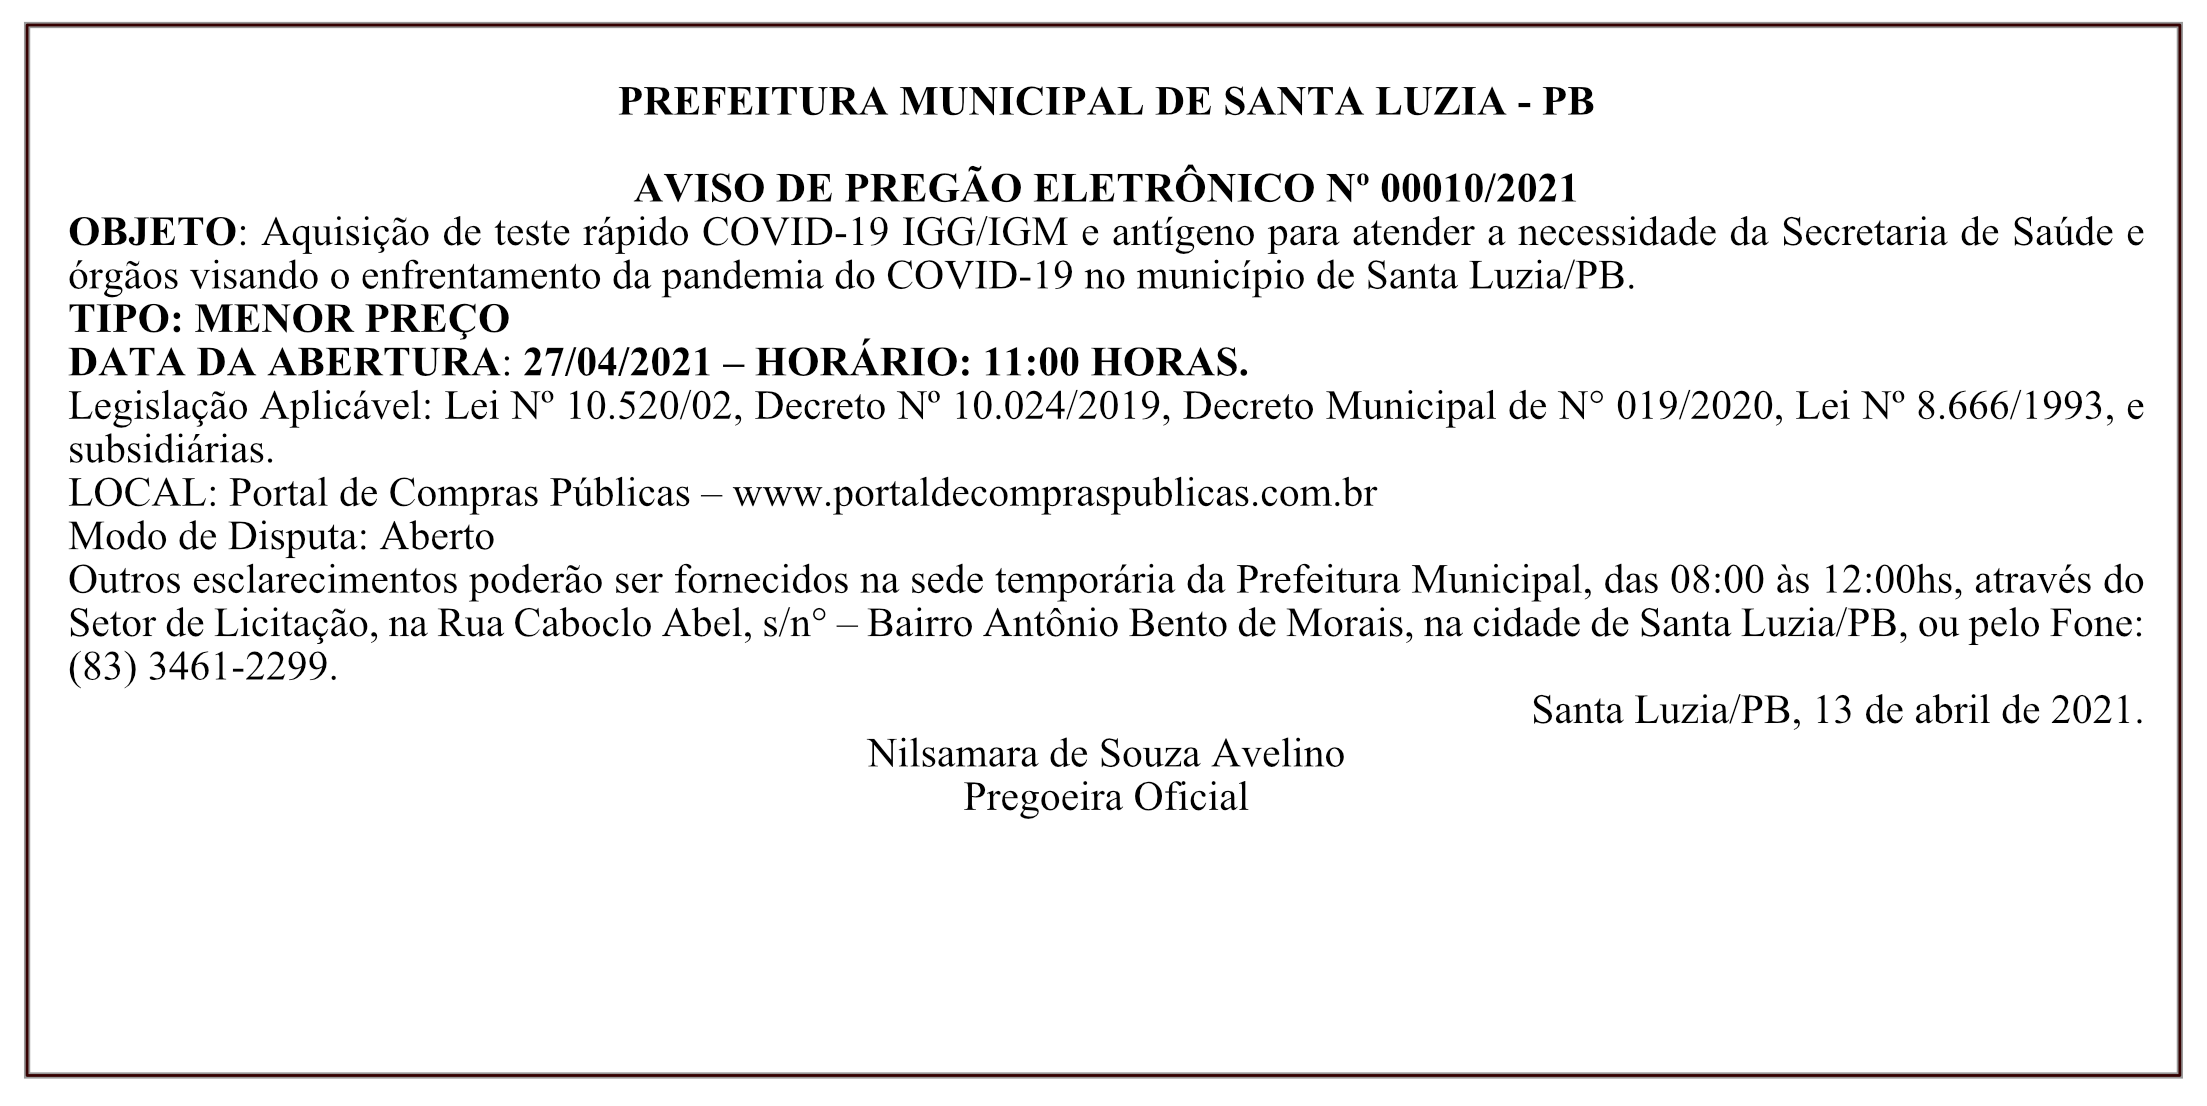 PREFEITURA MUNICIPAL DE SANTA LUZIA – AVISO DE PREGÃO ELETRÔNICO Nº 00010/2021